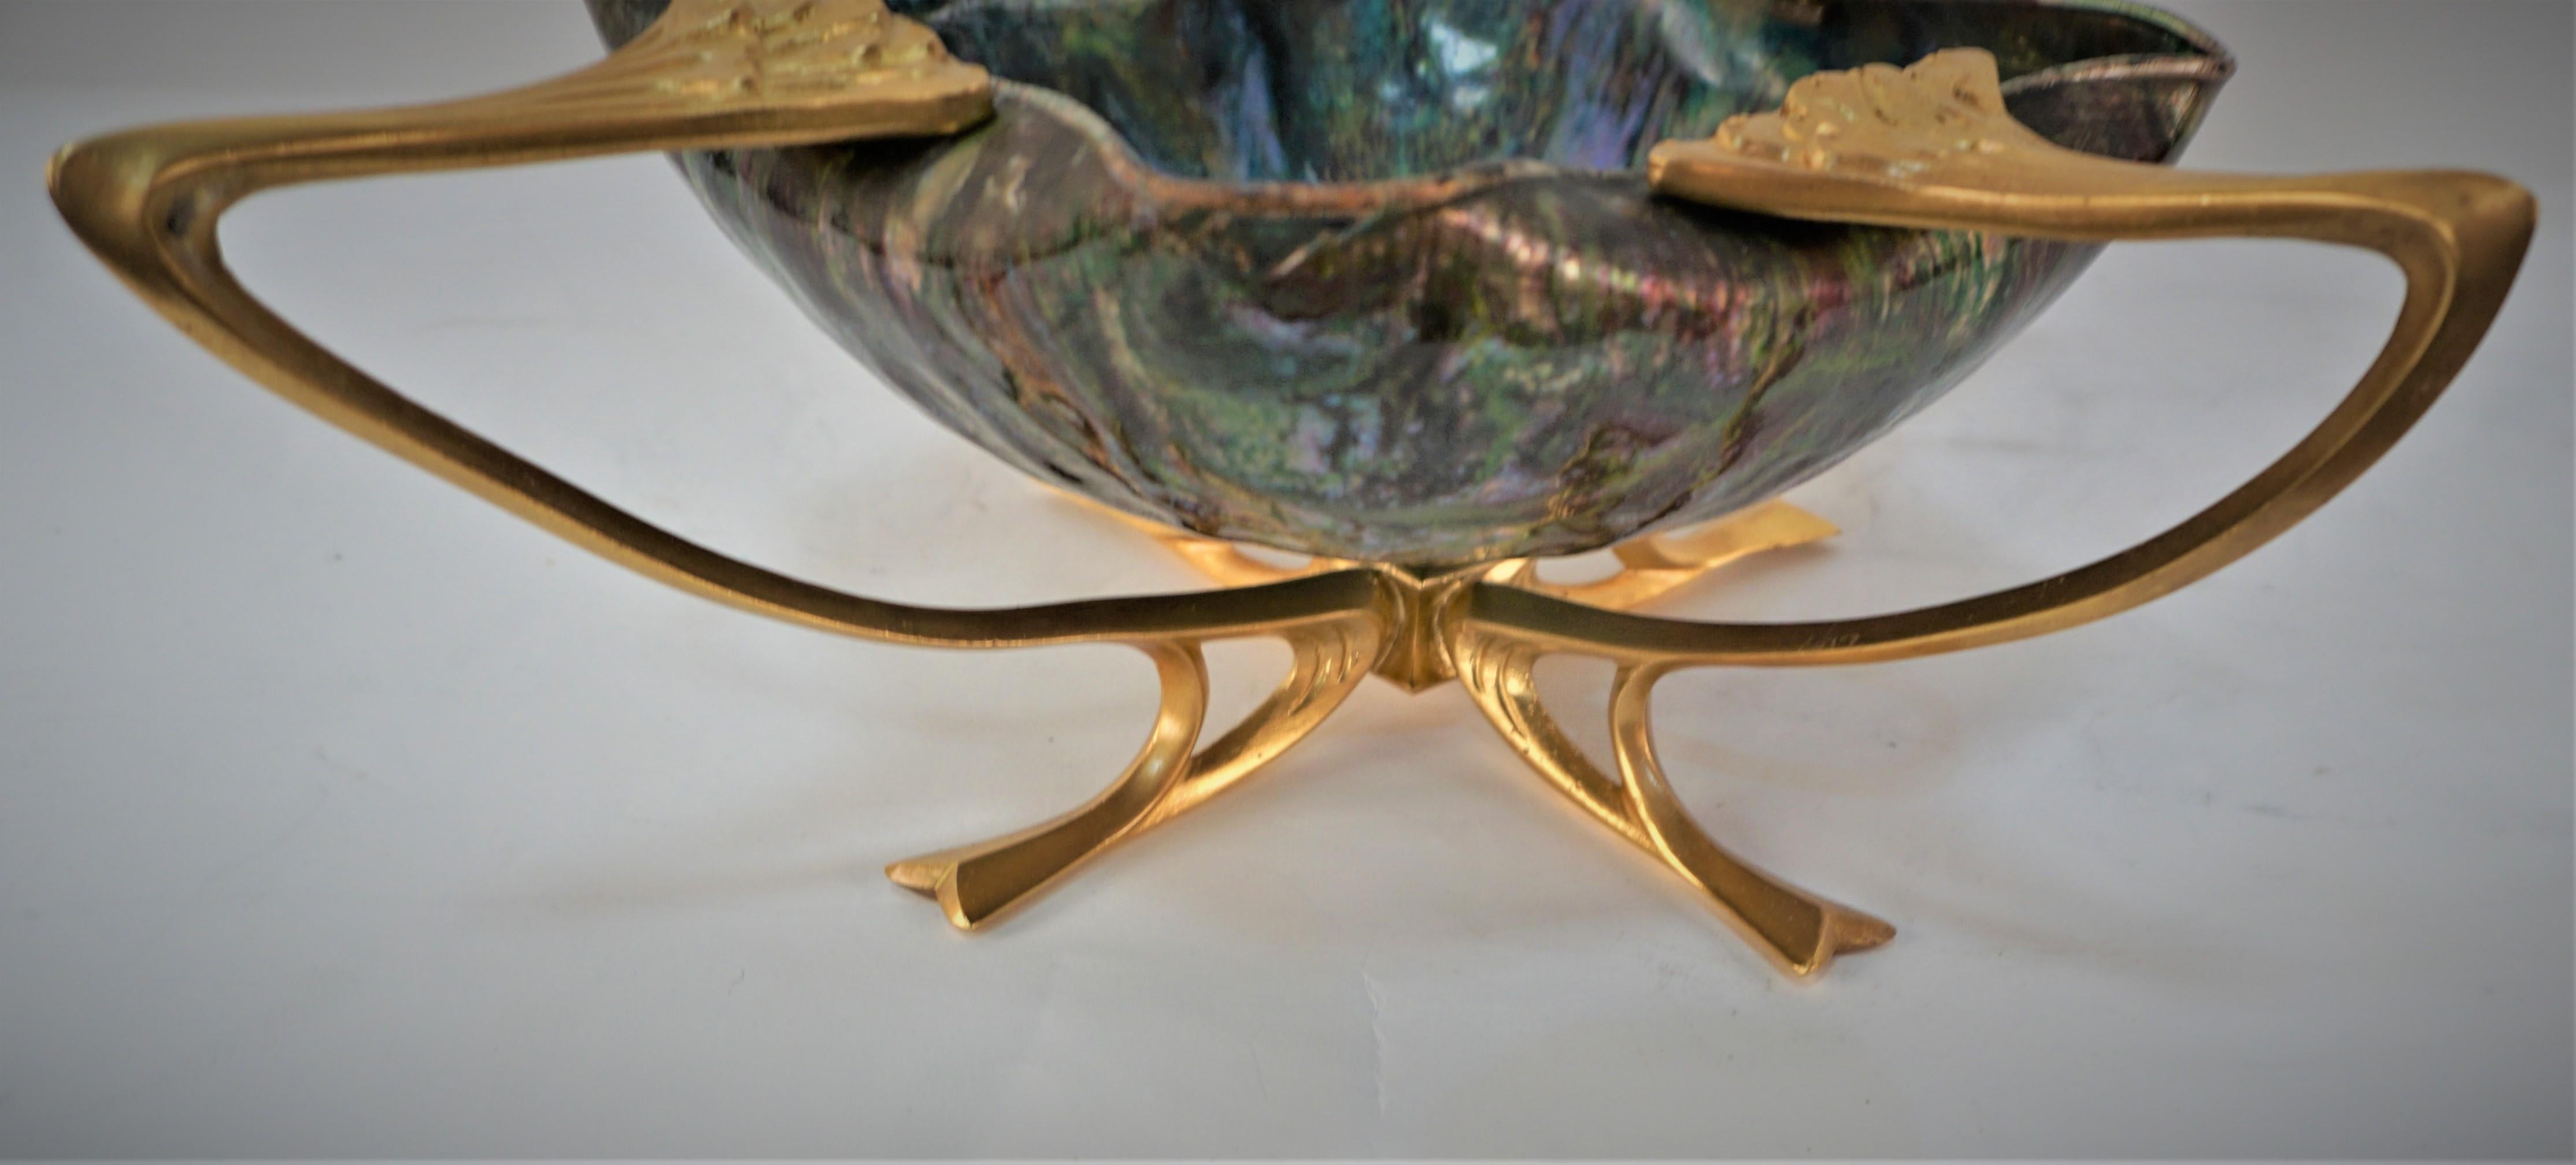 Art Nouveau vergoldeter Bronzesockel mit emaillierter Kupferschale in der Mitte.